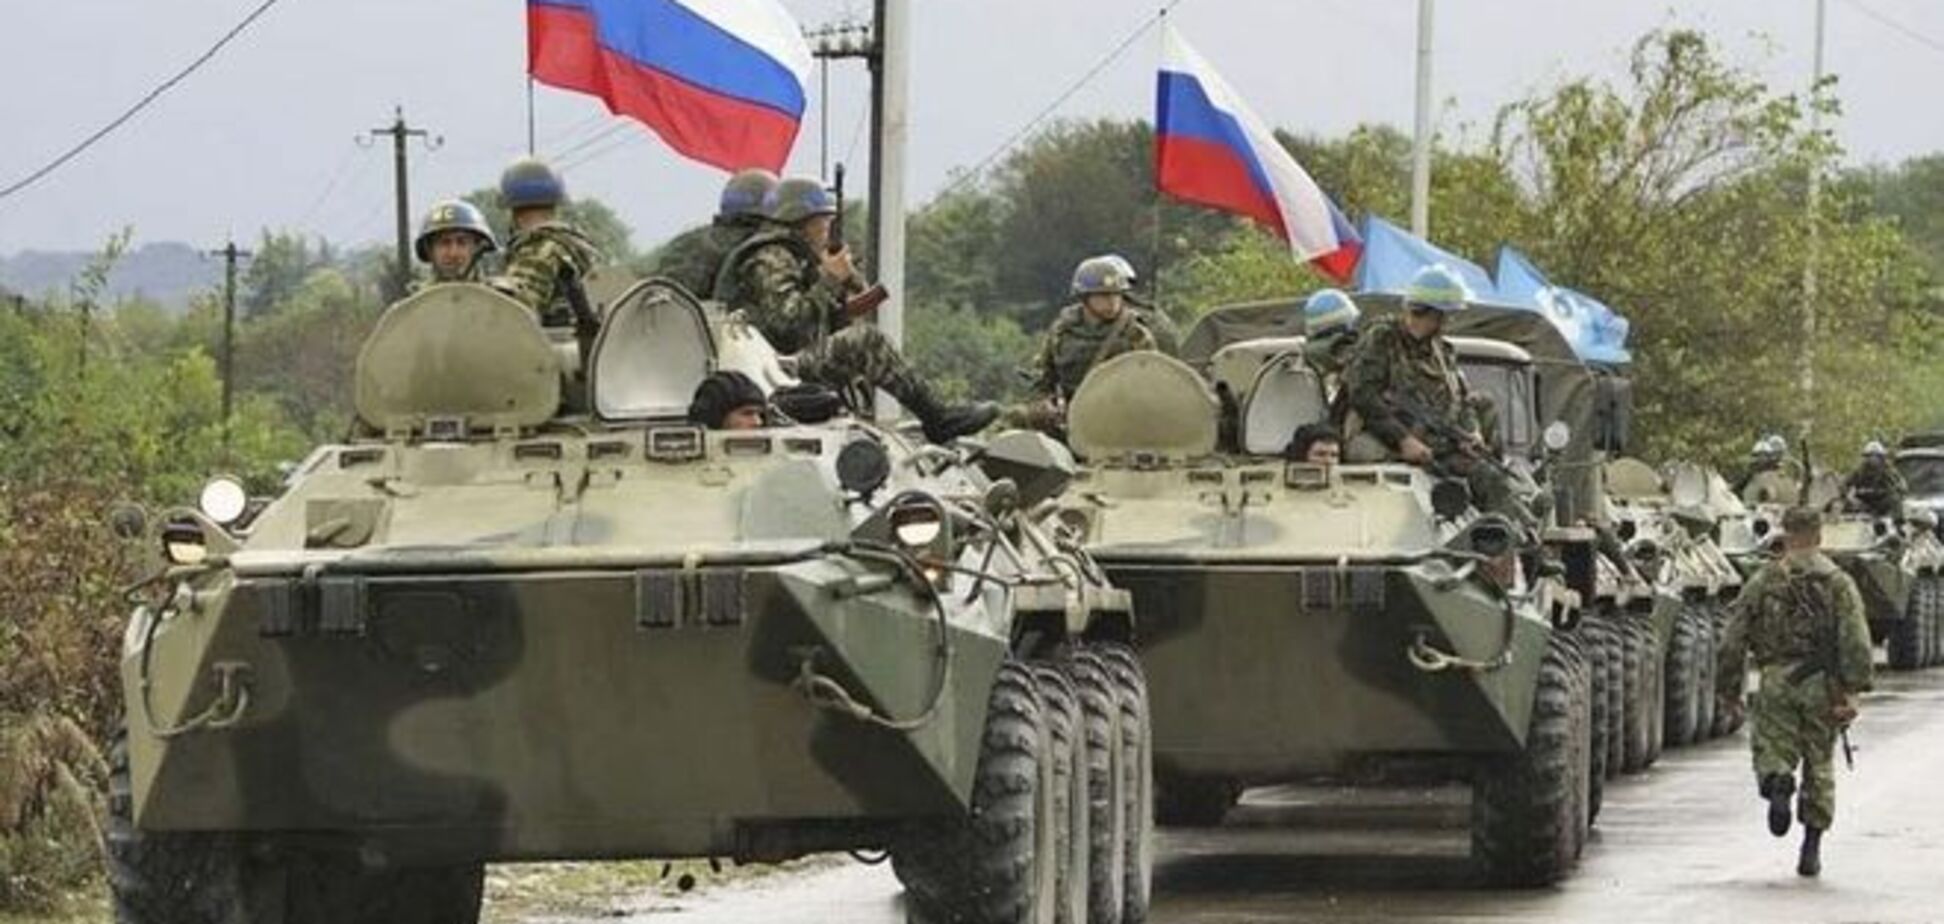 Більше половини росіян не бачать своїх солдатів в Україні - опитування